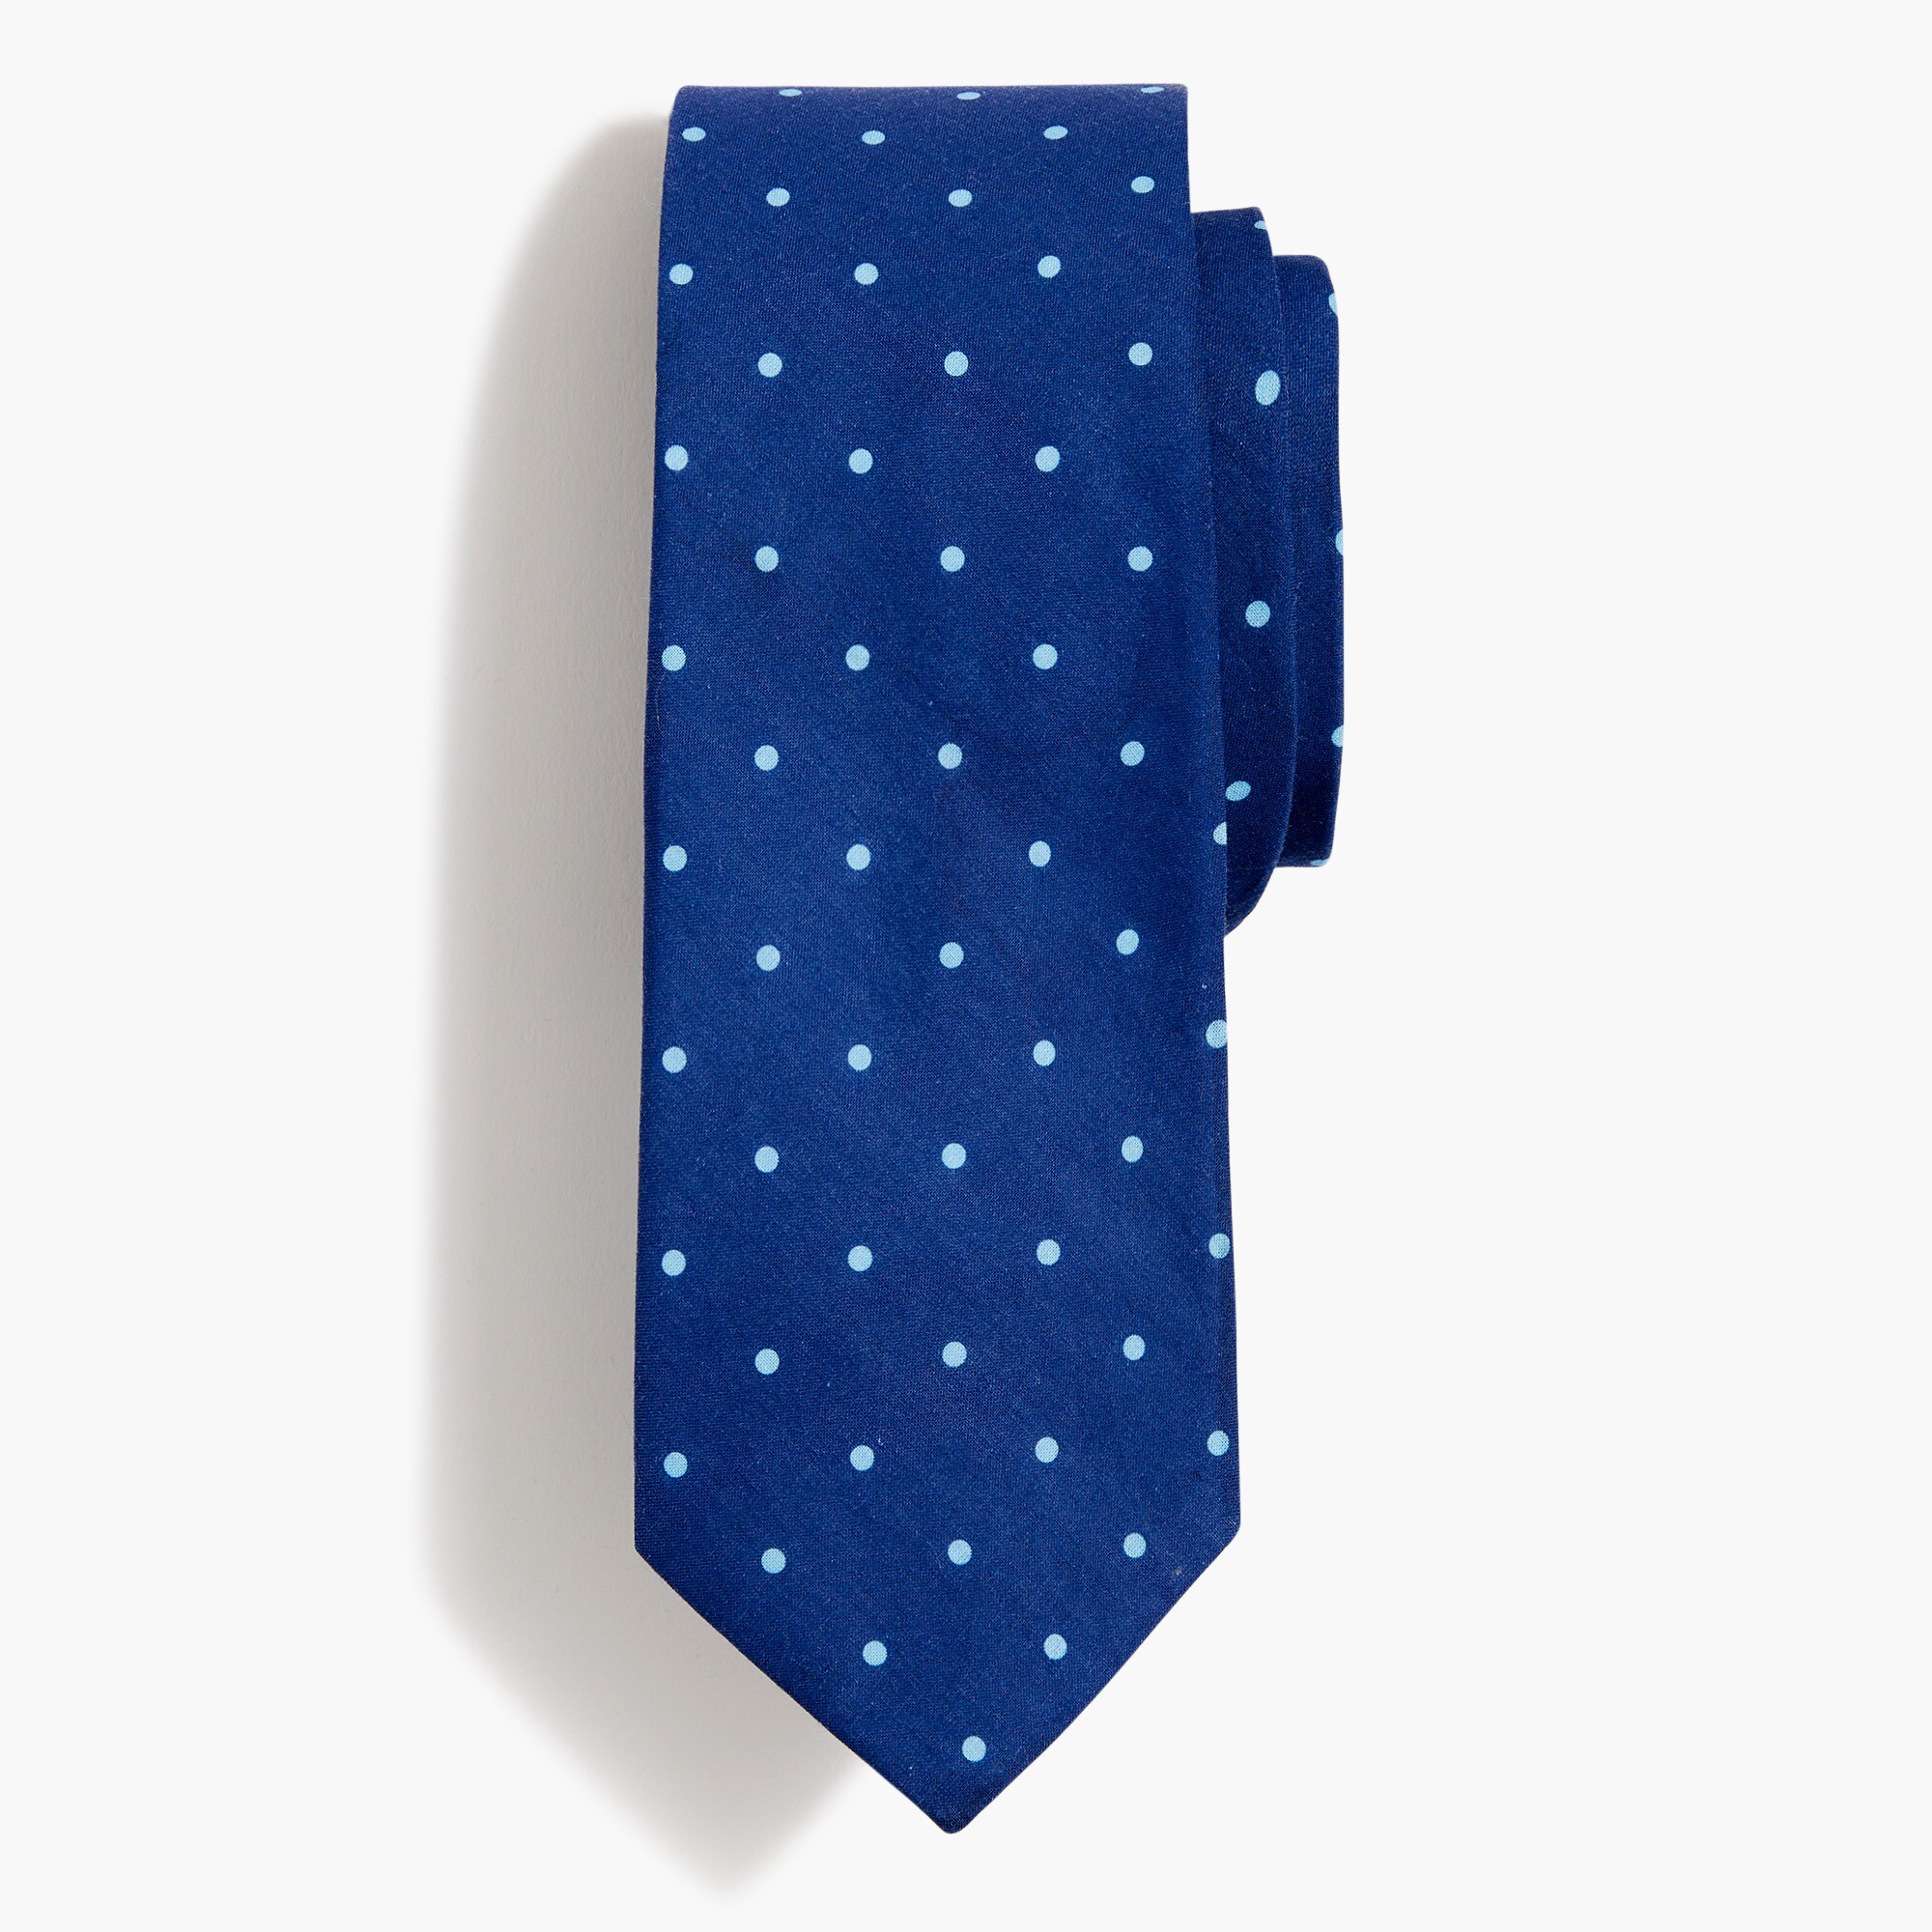  Blue dot tie